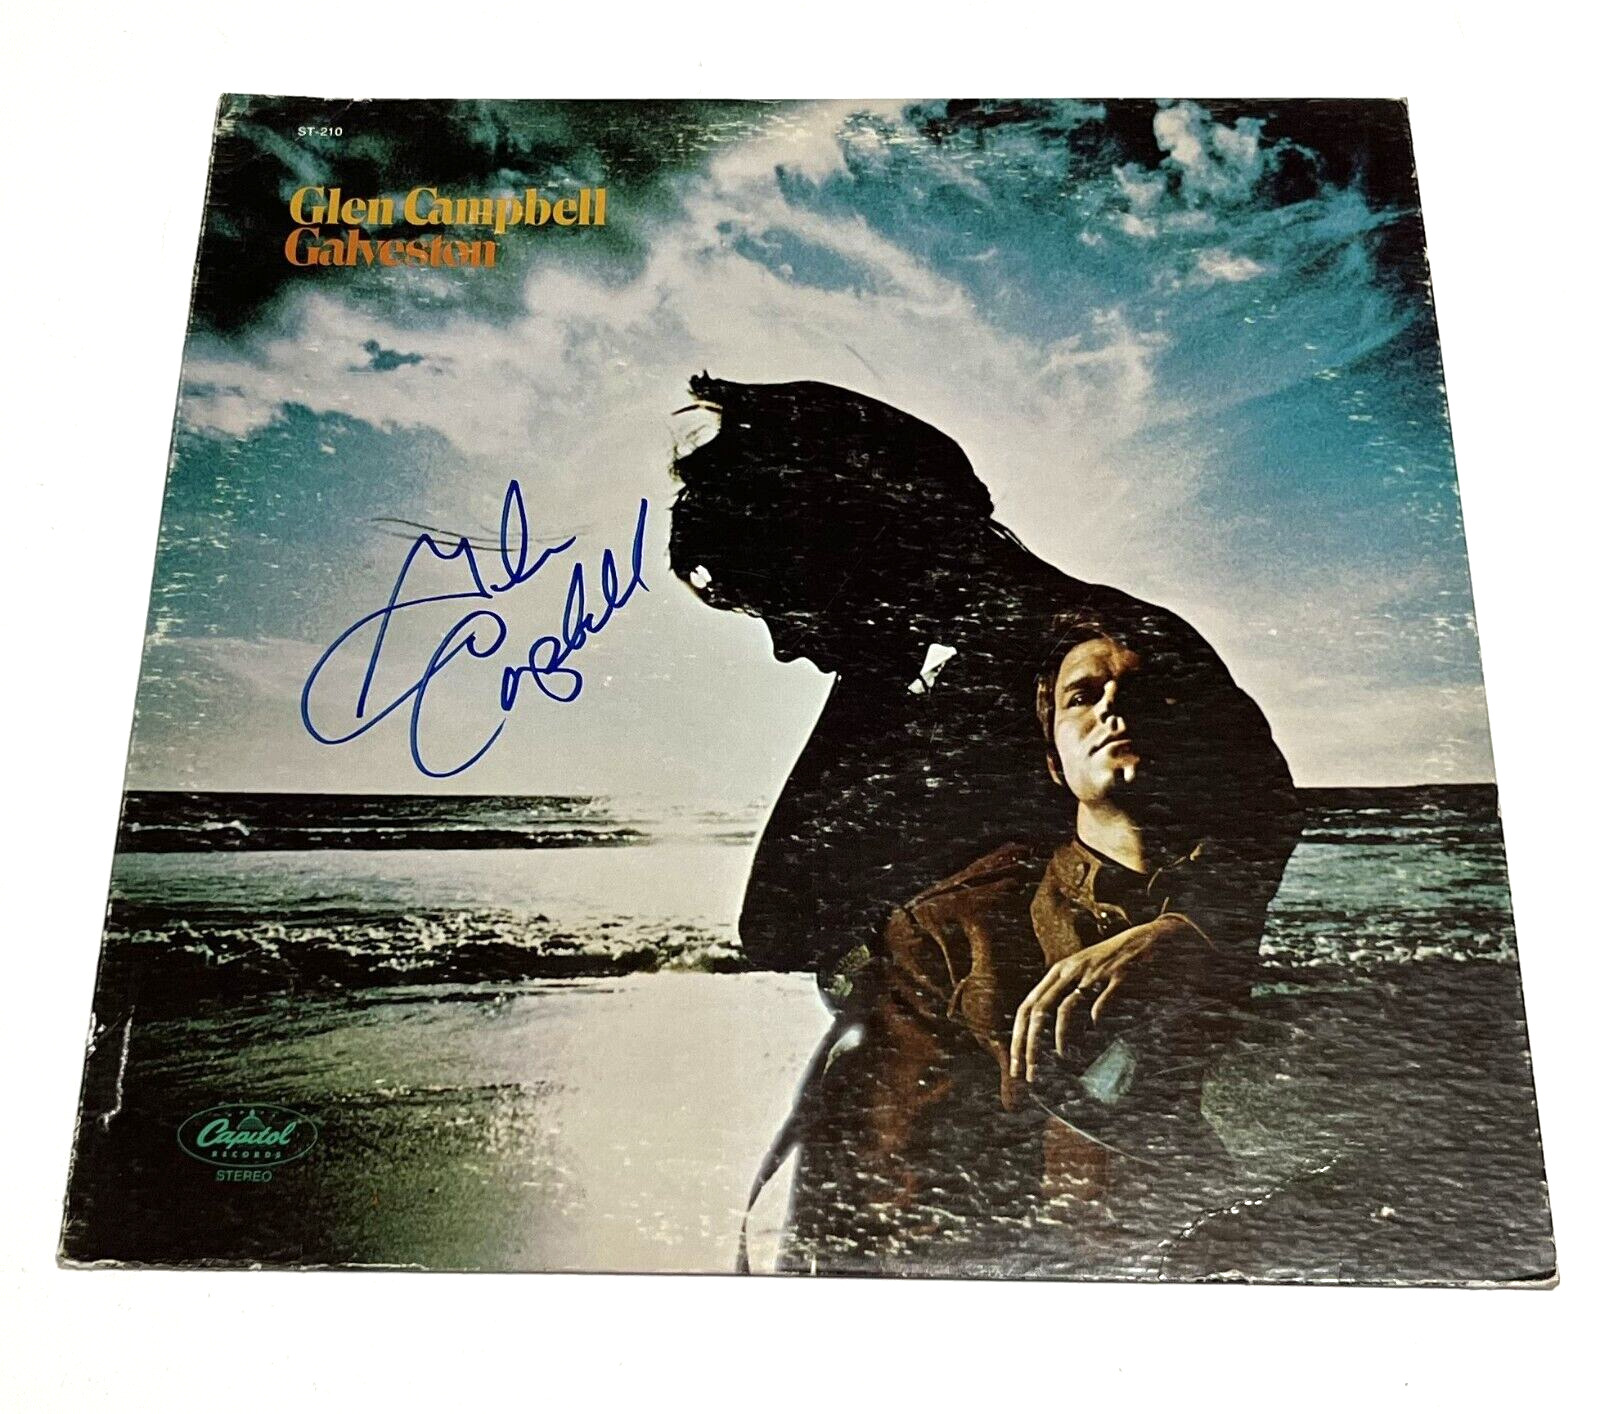 GLEN CAMPBELL "Galveston" Signed Autographed LP Album Cover Capitol ST-210